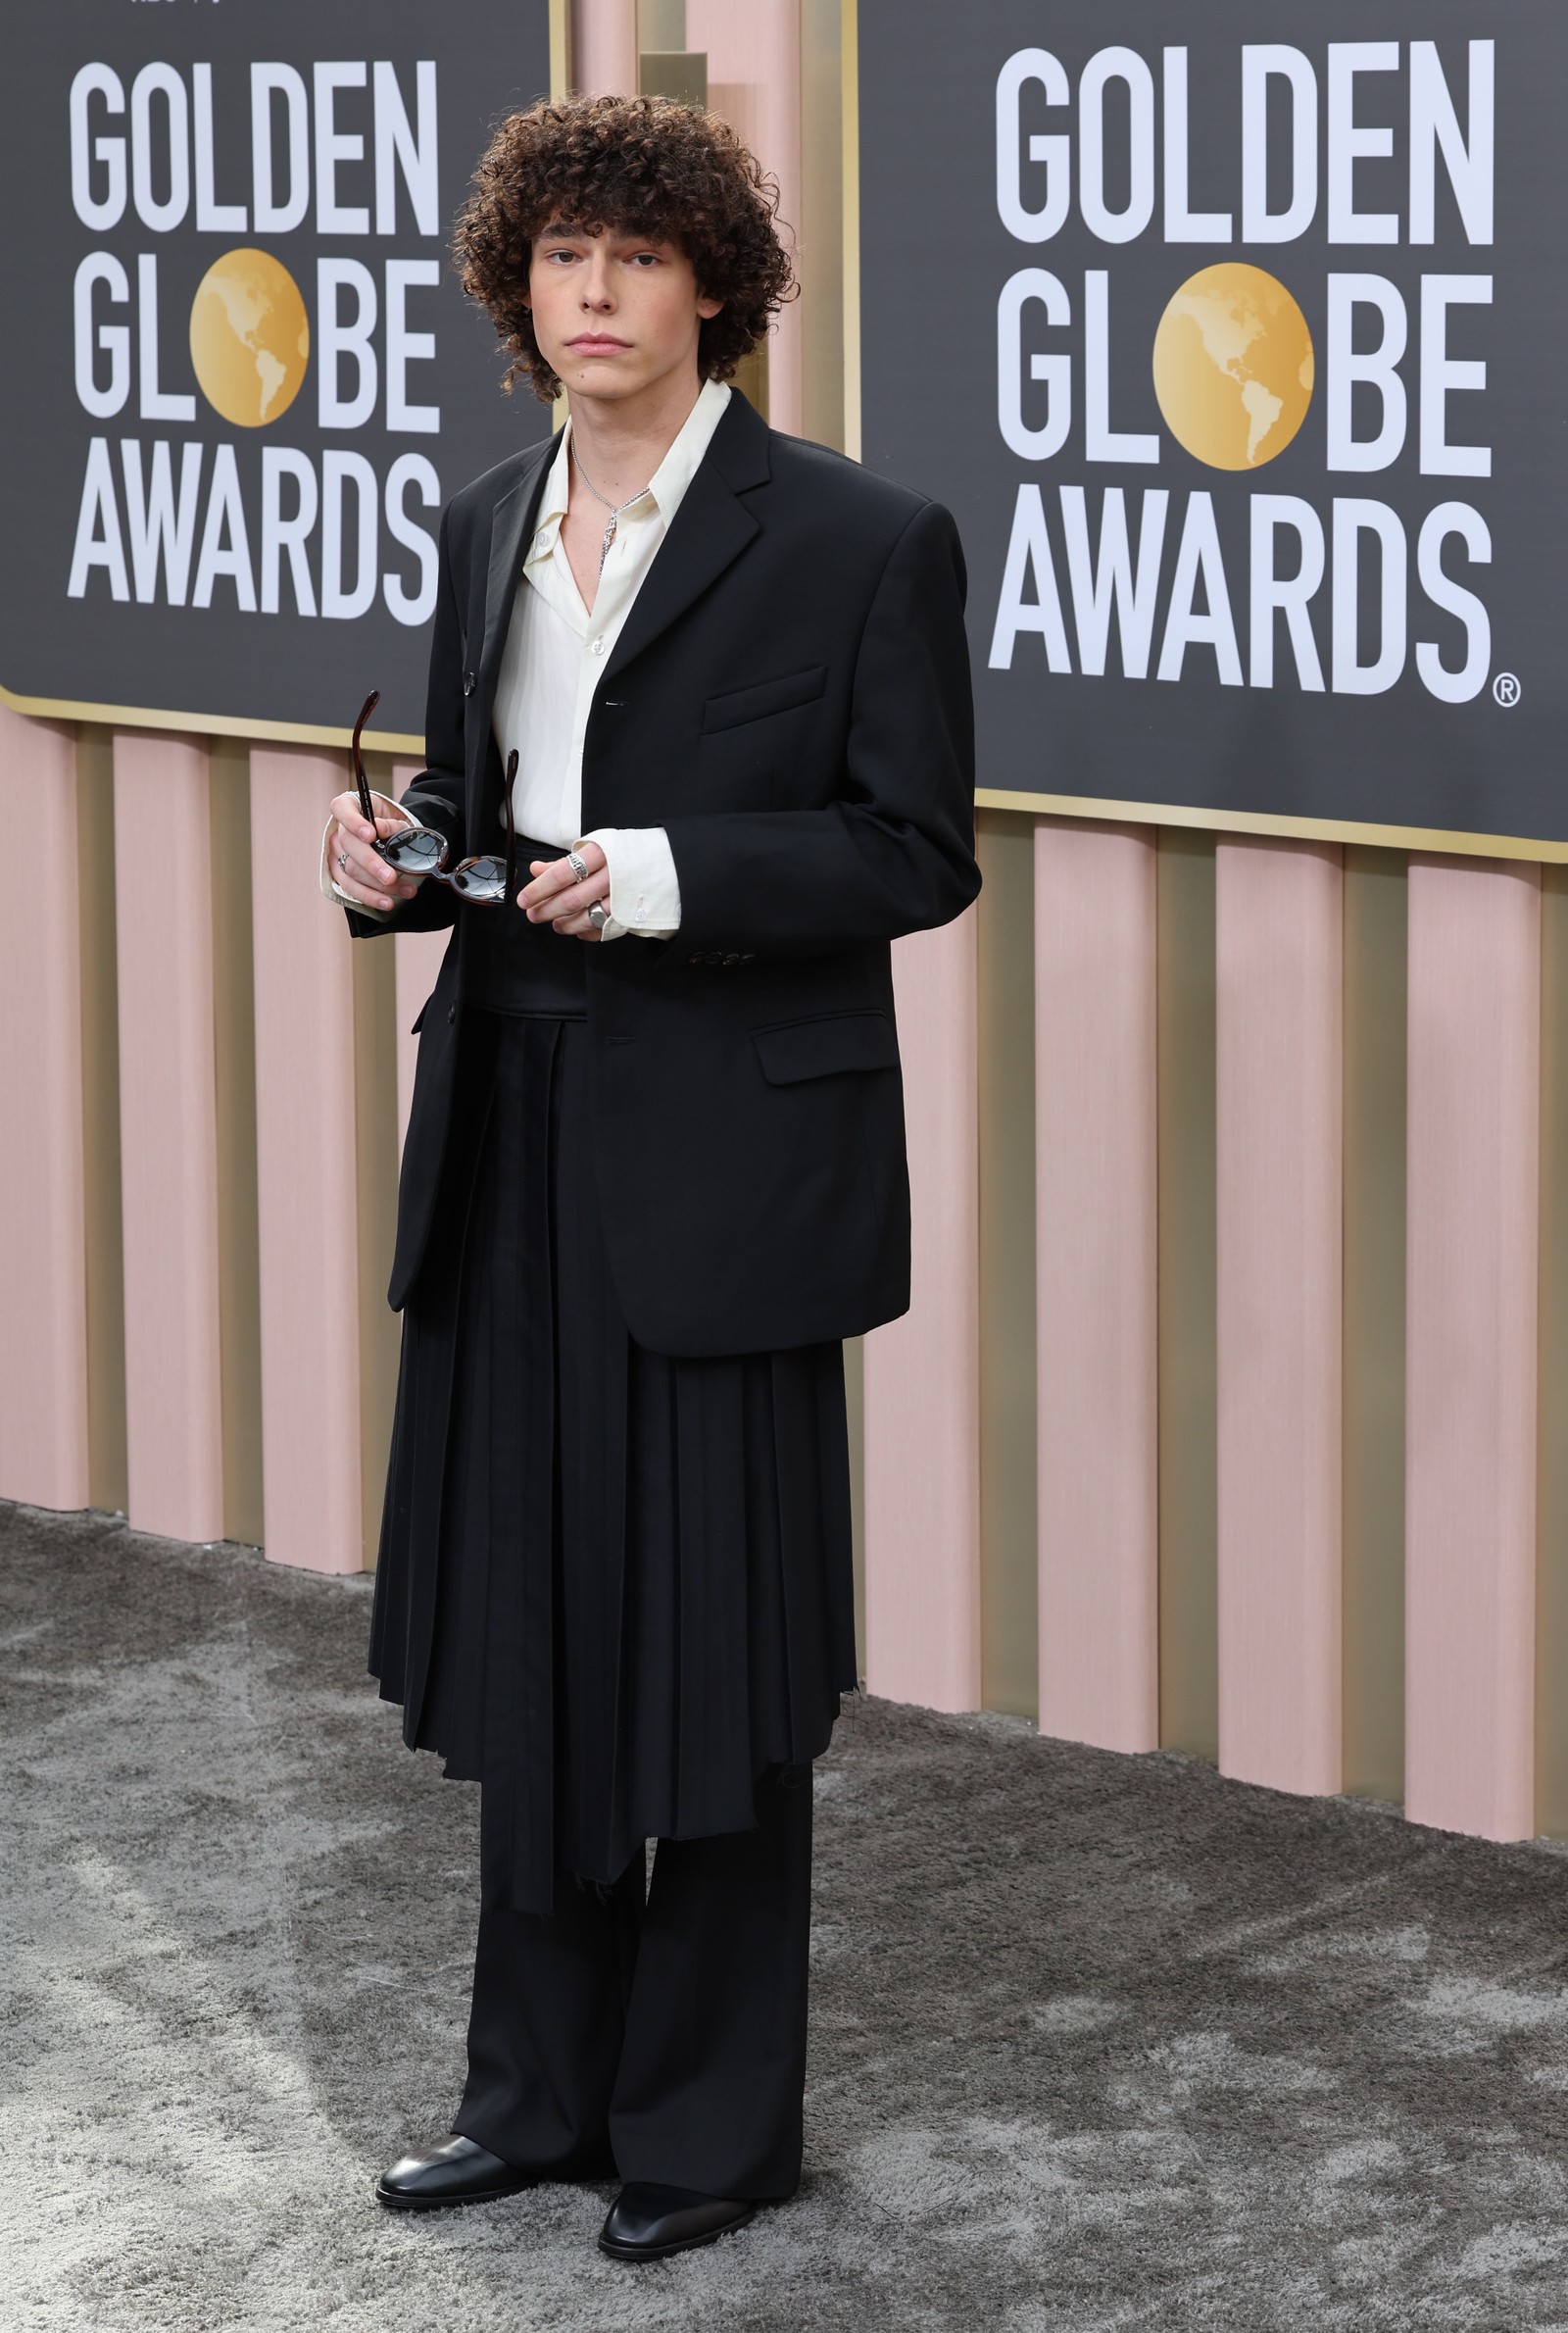 Reece Feldman usa saia e camisa bem aberta no Globo de Ouro 2023 — Foto: Robert Gauthier / Los Angeles Times via Getty Images